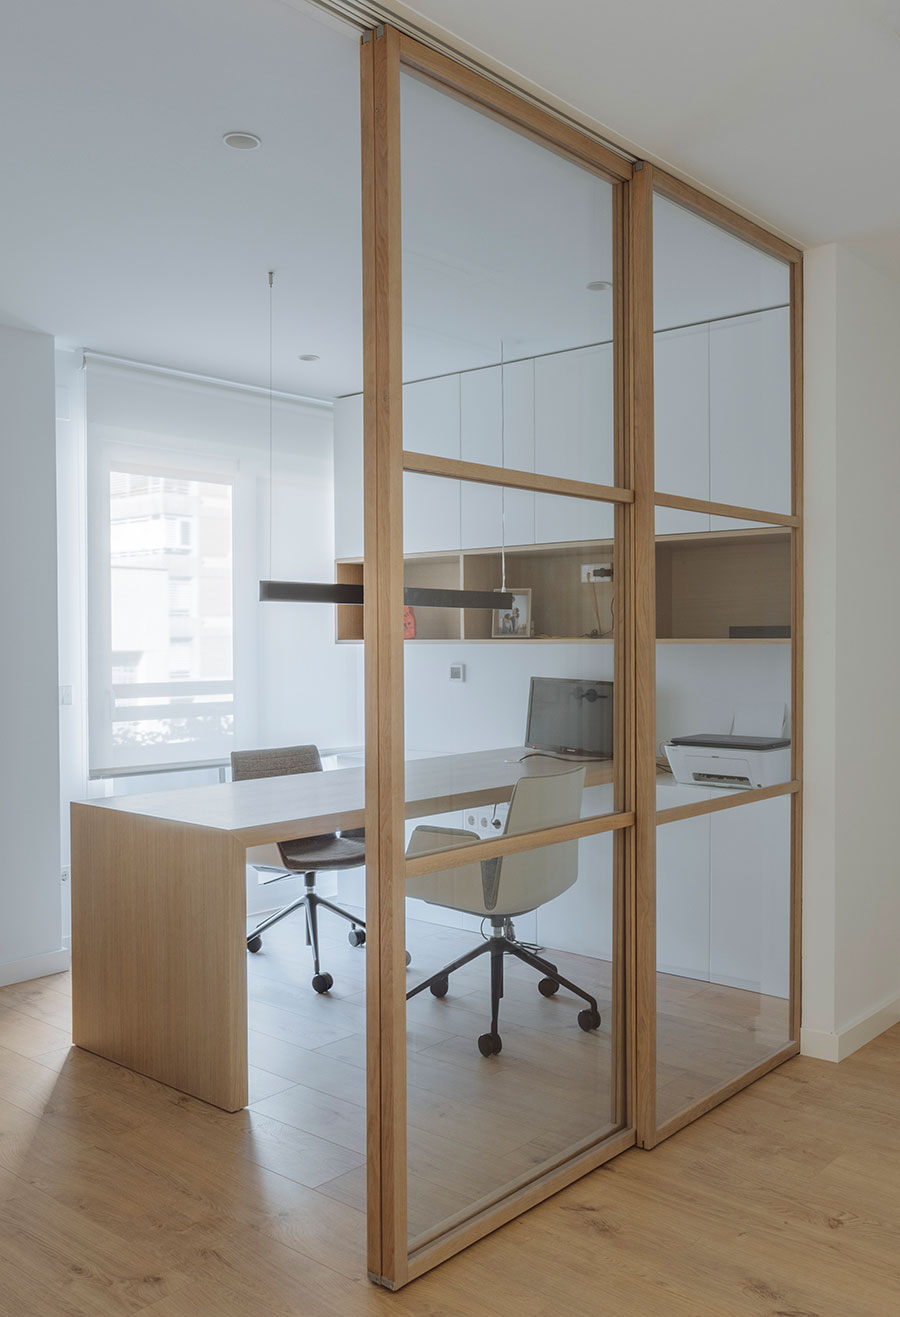 Dobleese reforma interiorismo puerta corredera vidrio madera roble despacho a medida apartamento